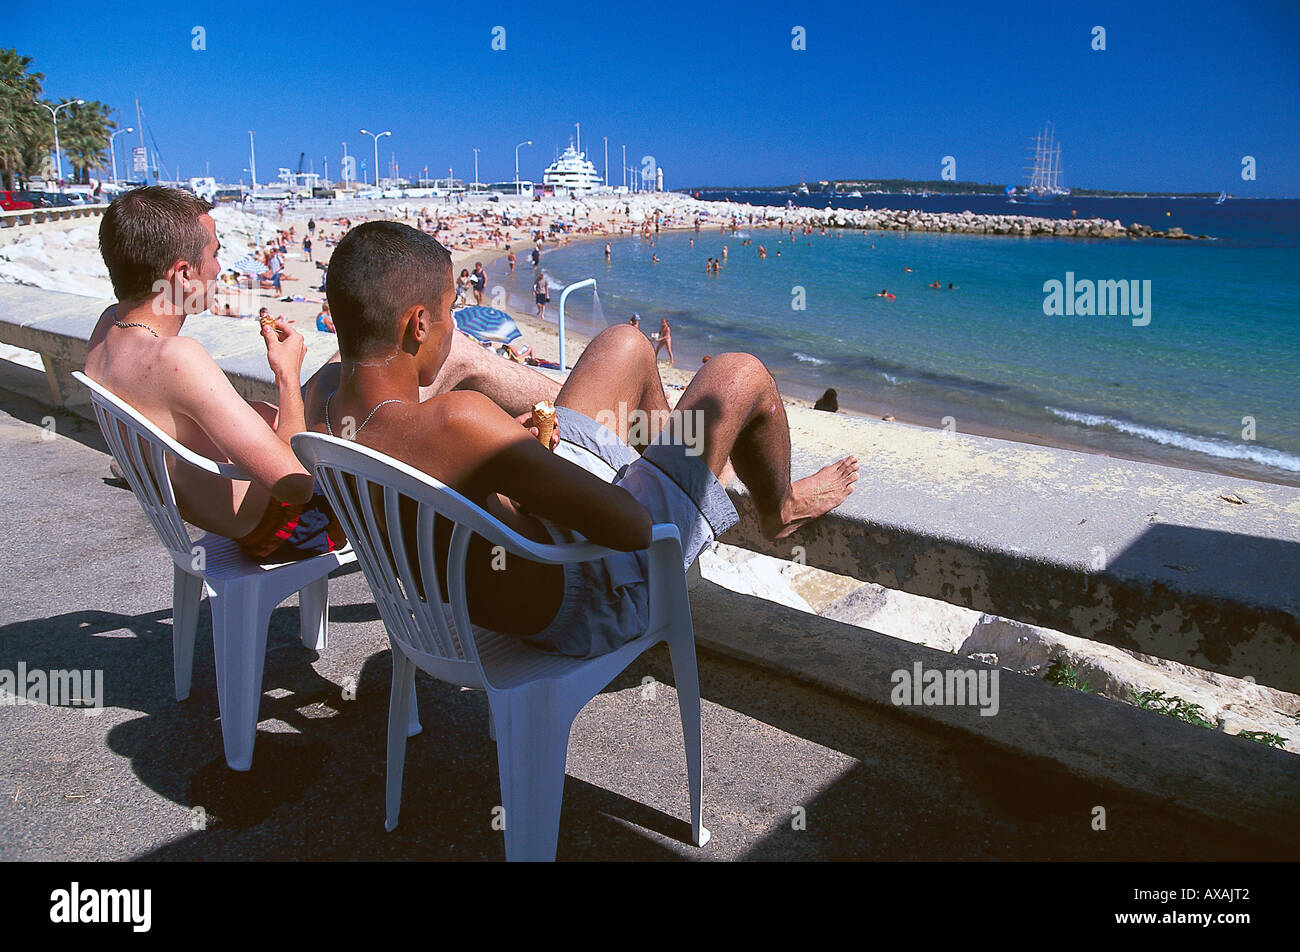 Beach, Plage du Midi, Cannes Cote d'Azur, France Stock Photo - Alamy